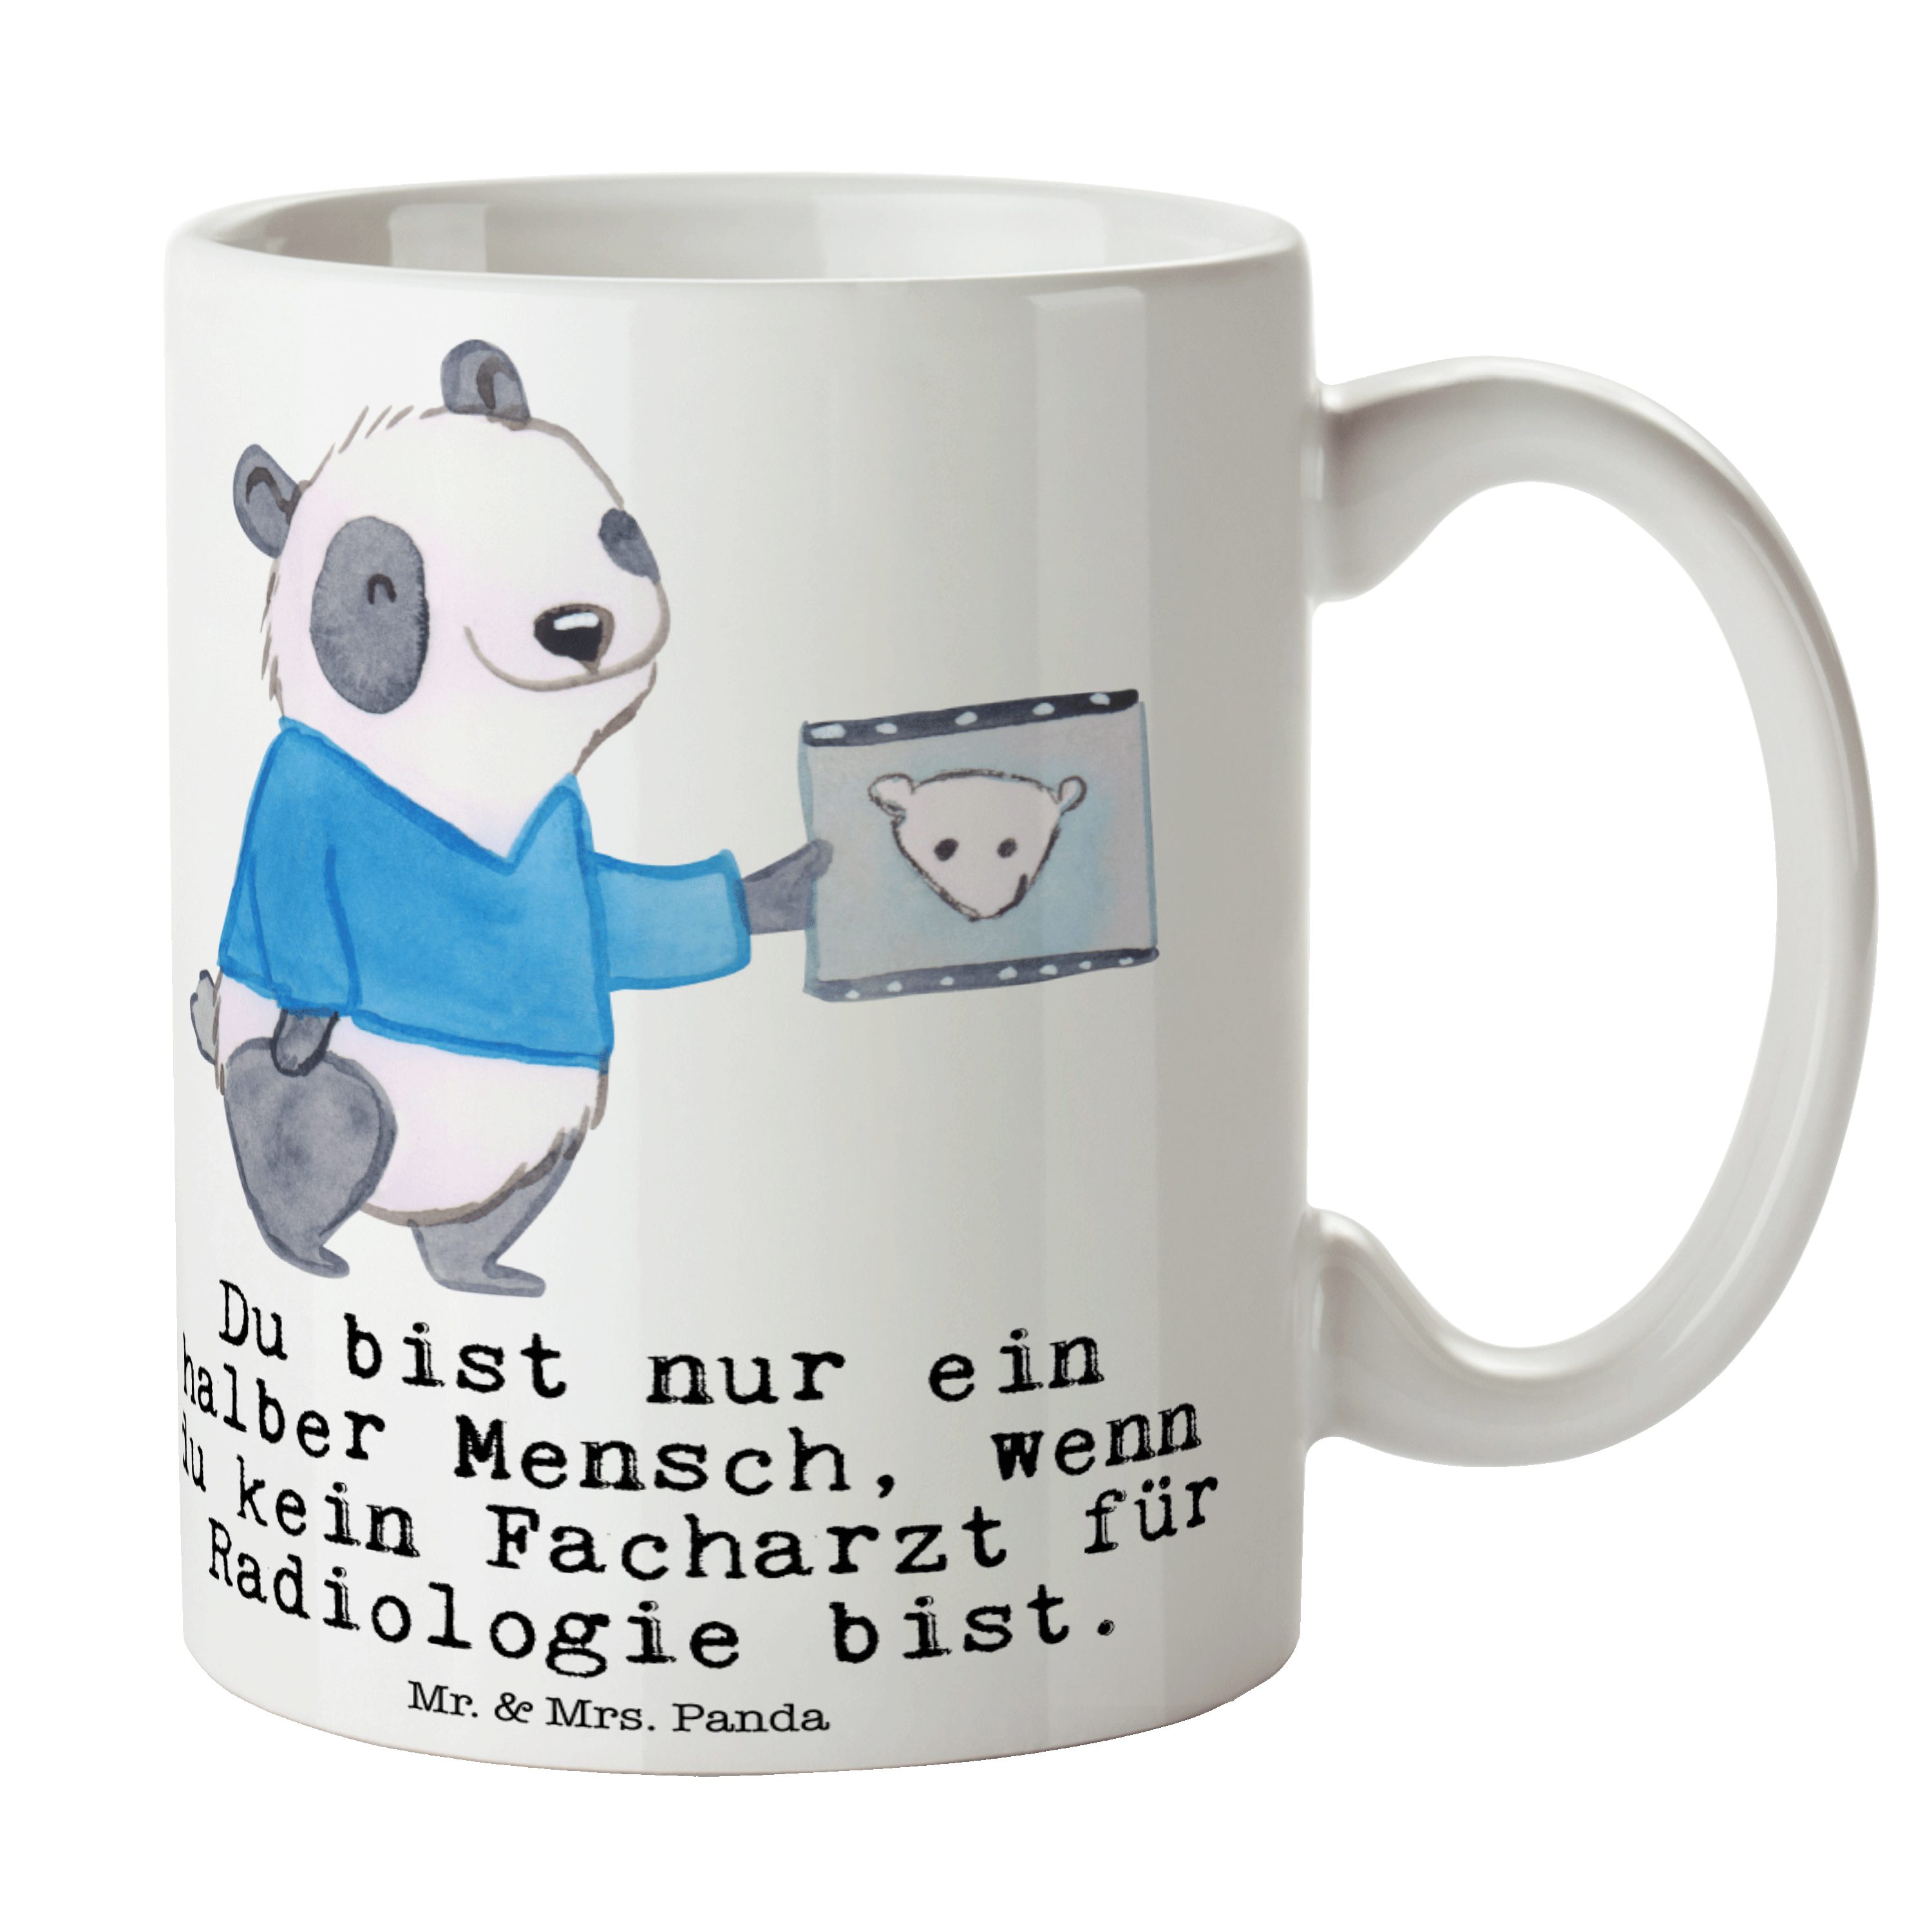 Mr. & Facharzt Geschenk, Tasse Keramik Weiß mit Kollege, für Mrs. Panda - Keramikt, Herz - Radiologie